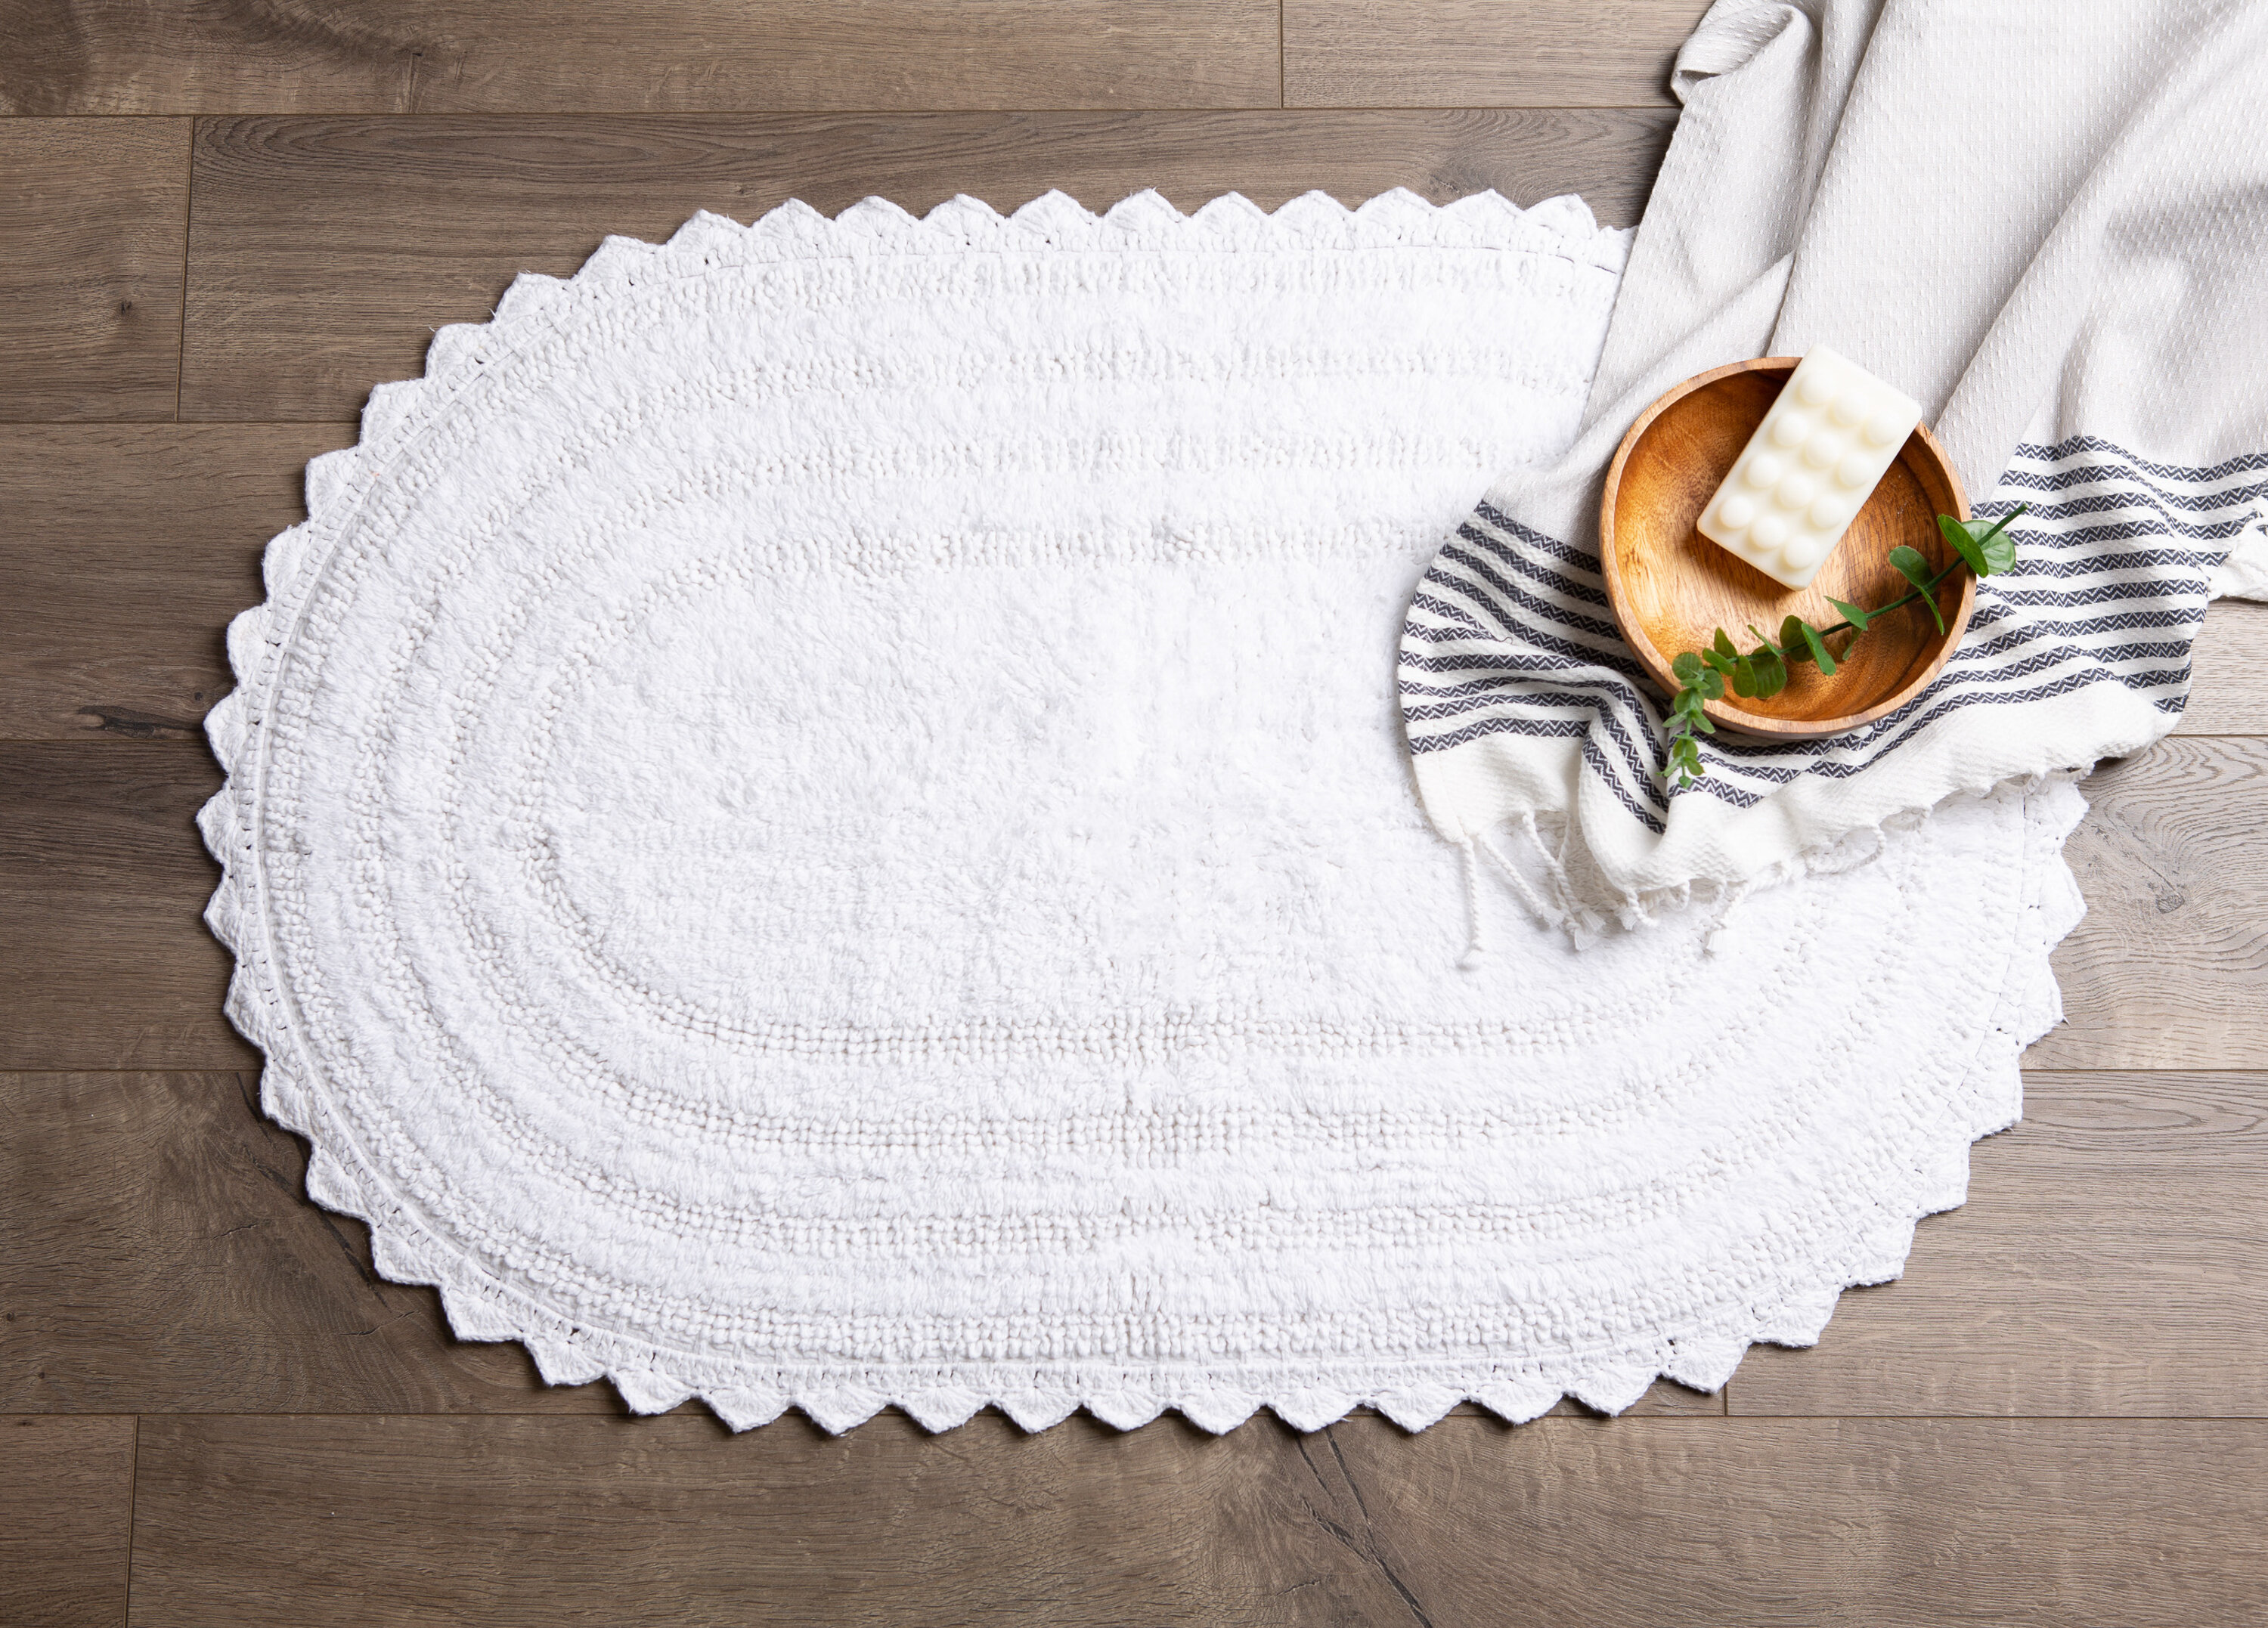 Details about   100% Cotton Crochet Large Oval Luxury Spa Soft Bath Rug Bathroom Vanit Carpet 